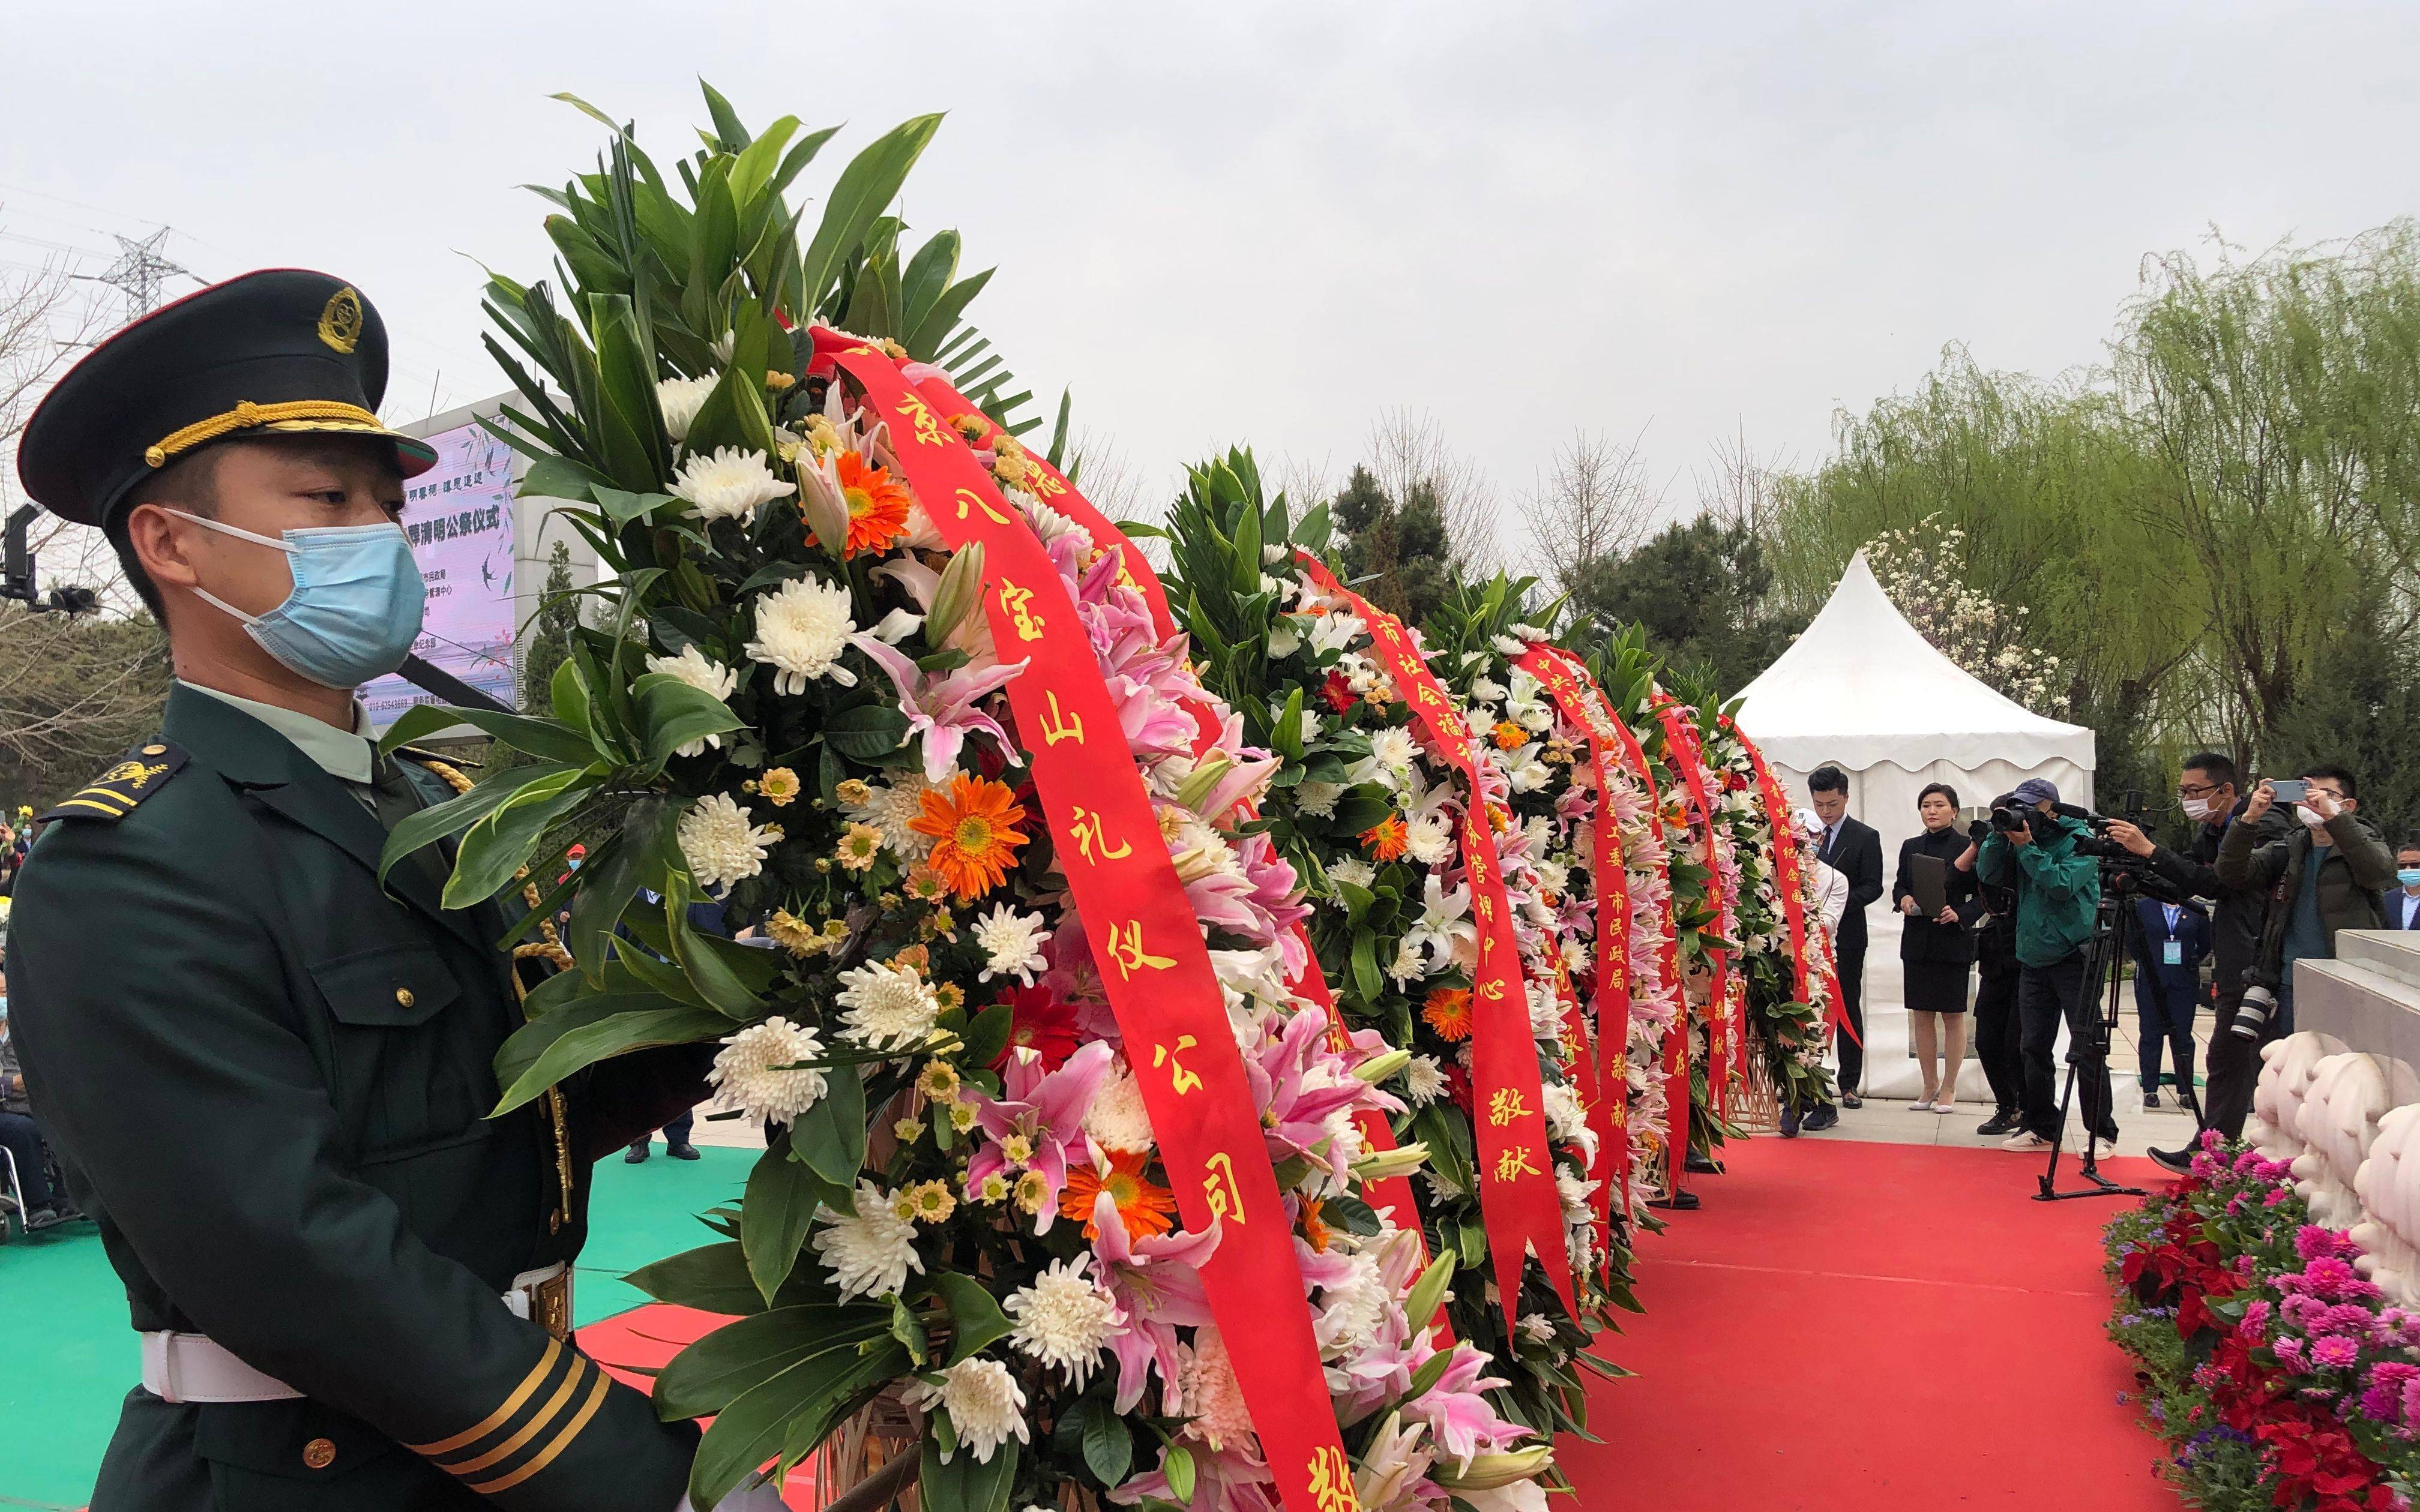 仪式现场,礼兵列队向生态葬纪念碑敬献花篮